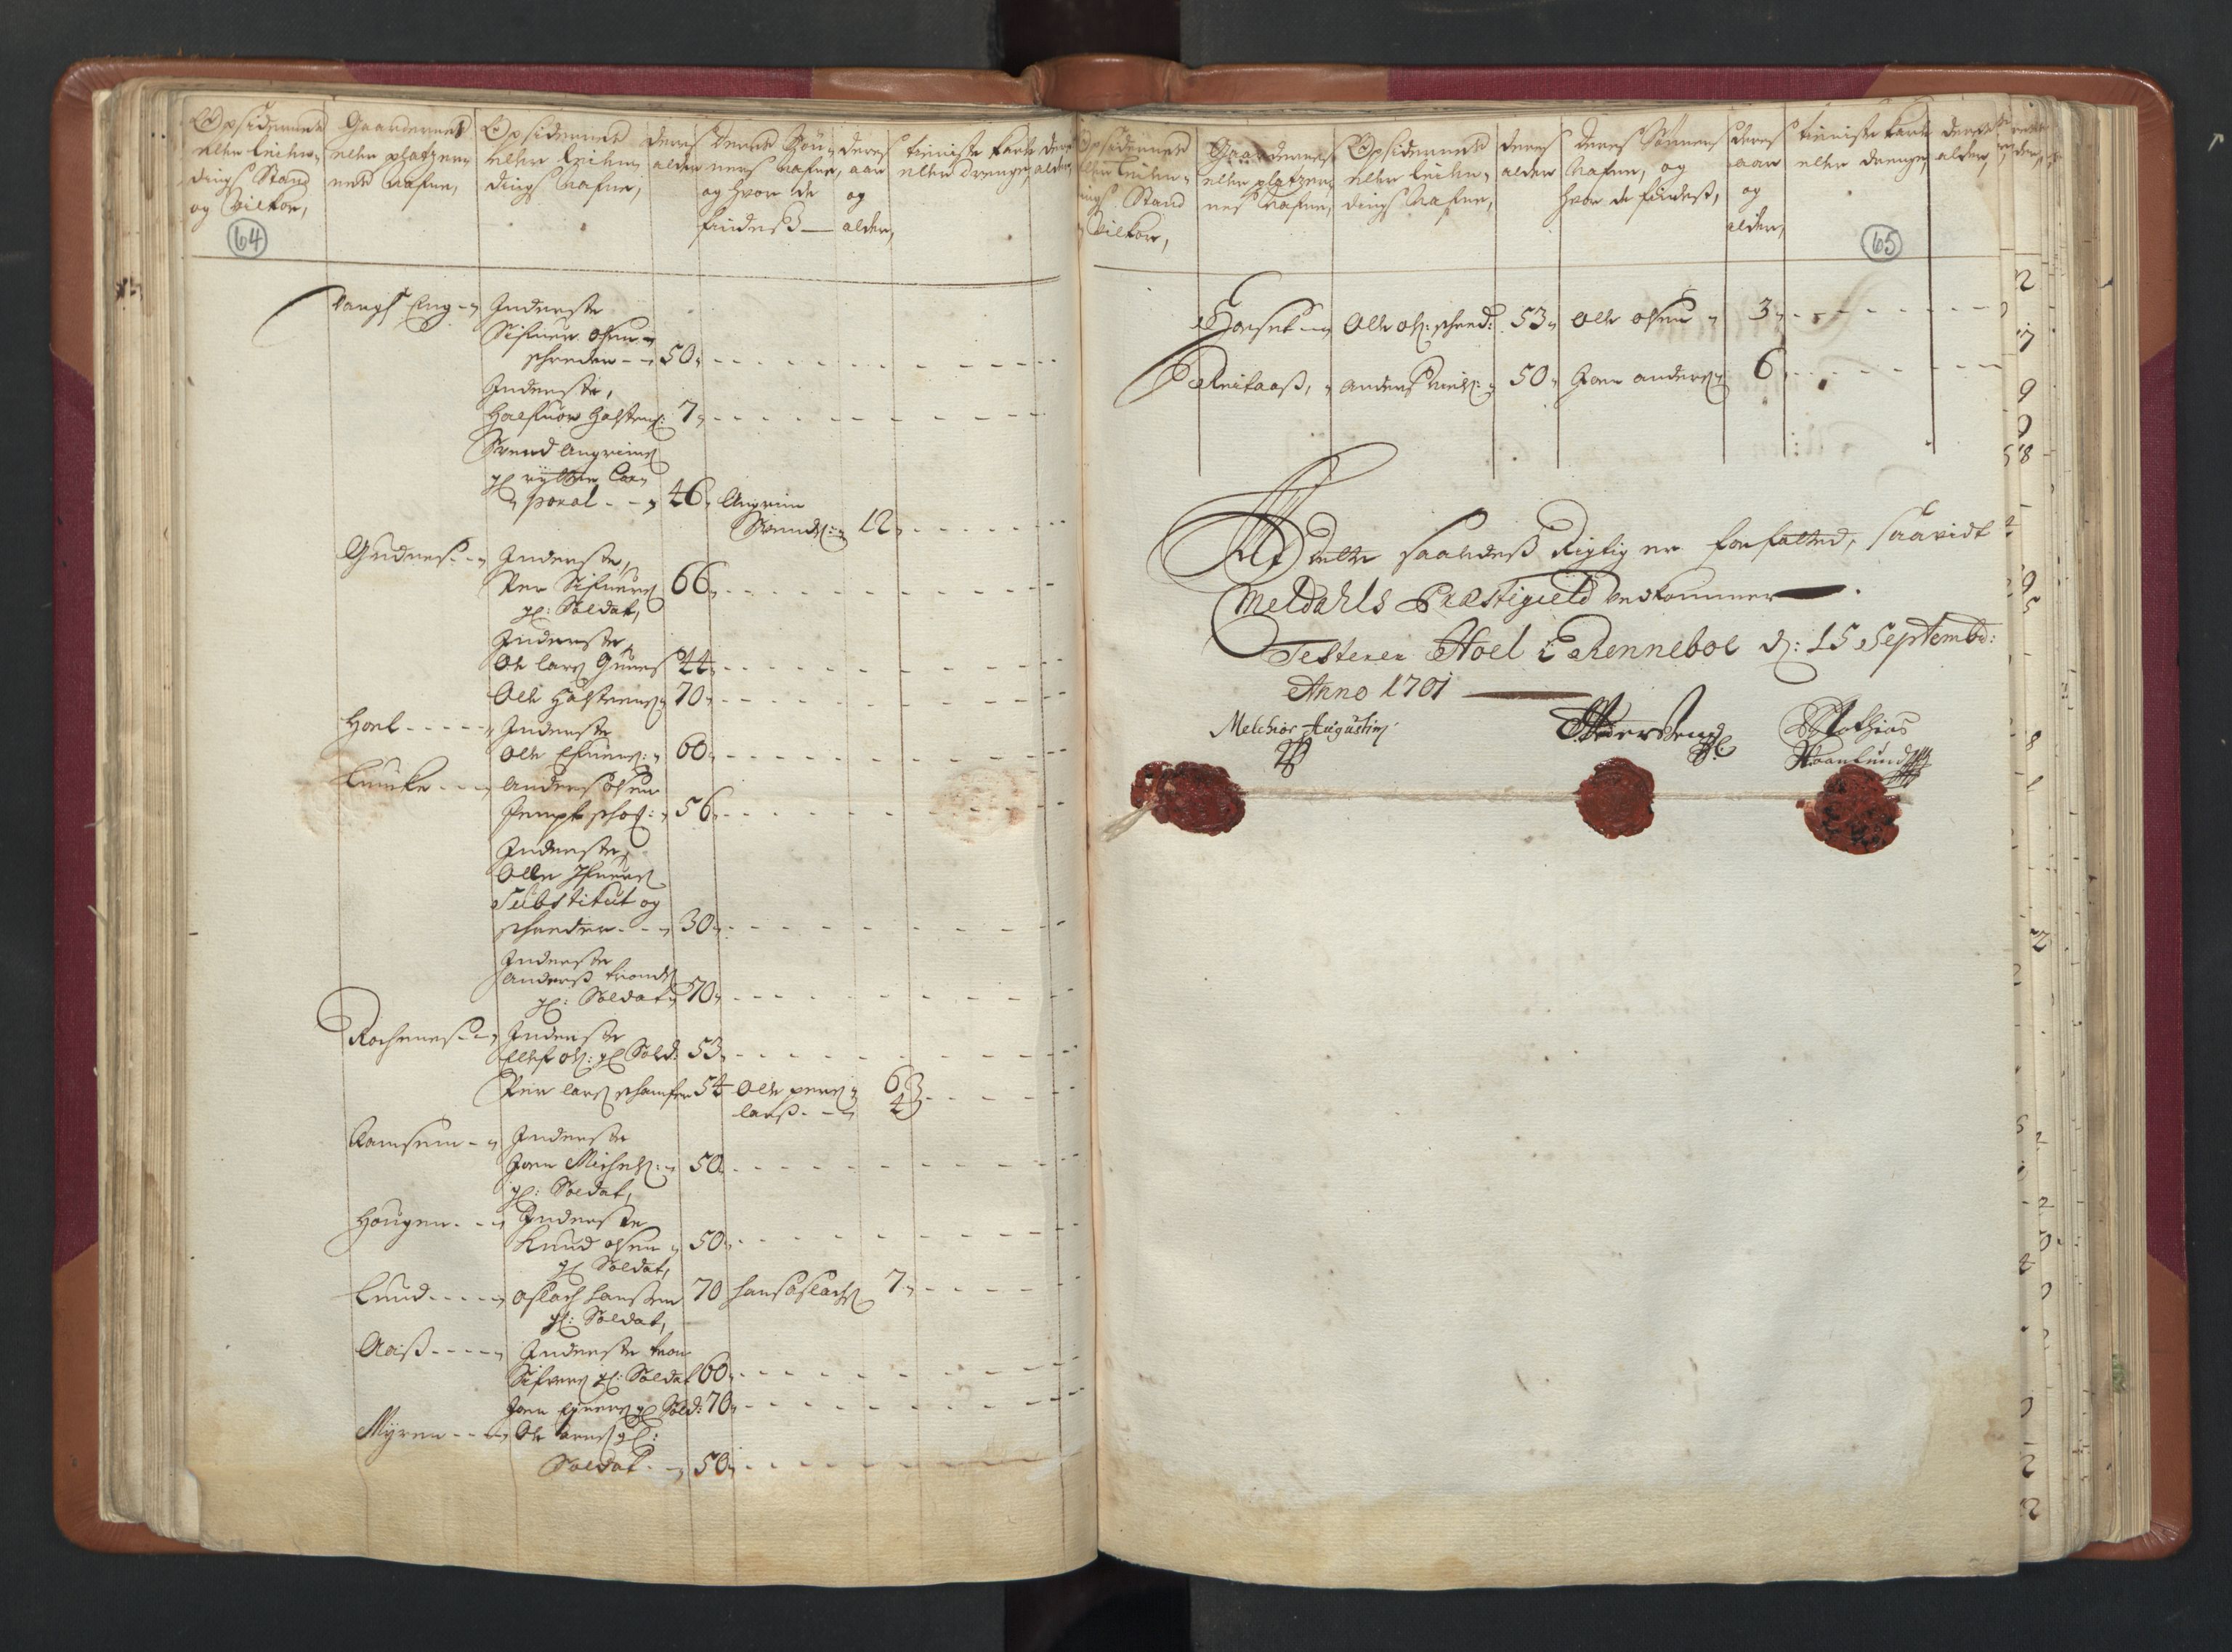 RA, Manntallet 1701, nr. 13: Orkdal fogderi og Gauldal fogderi med Røros kobberverk, 1701, s. 64-65